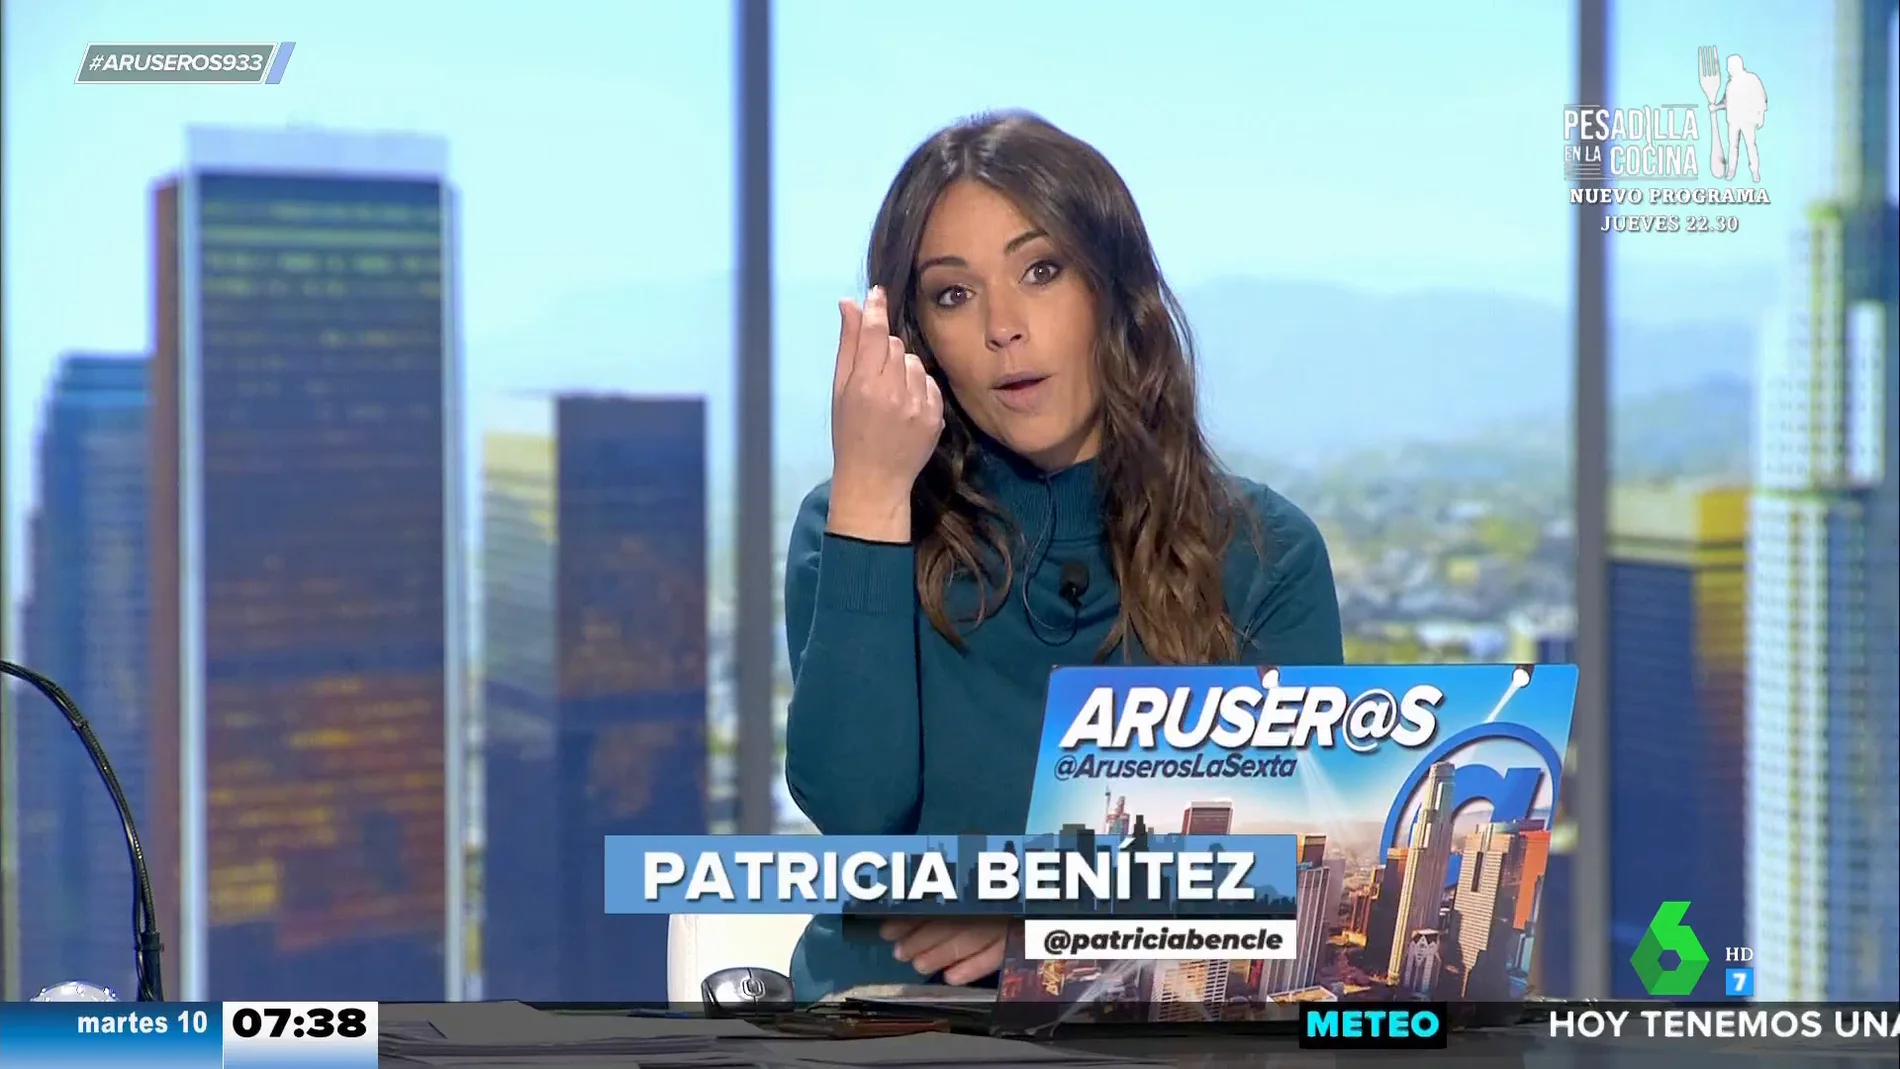 "¿Cuánto dinero tienes en la cuenta?": las preguntas de Patricia Benítez a su cita si practicara el 'hardballing'